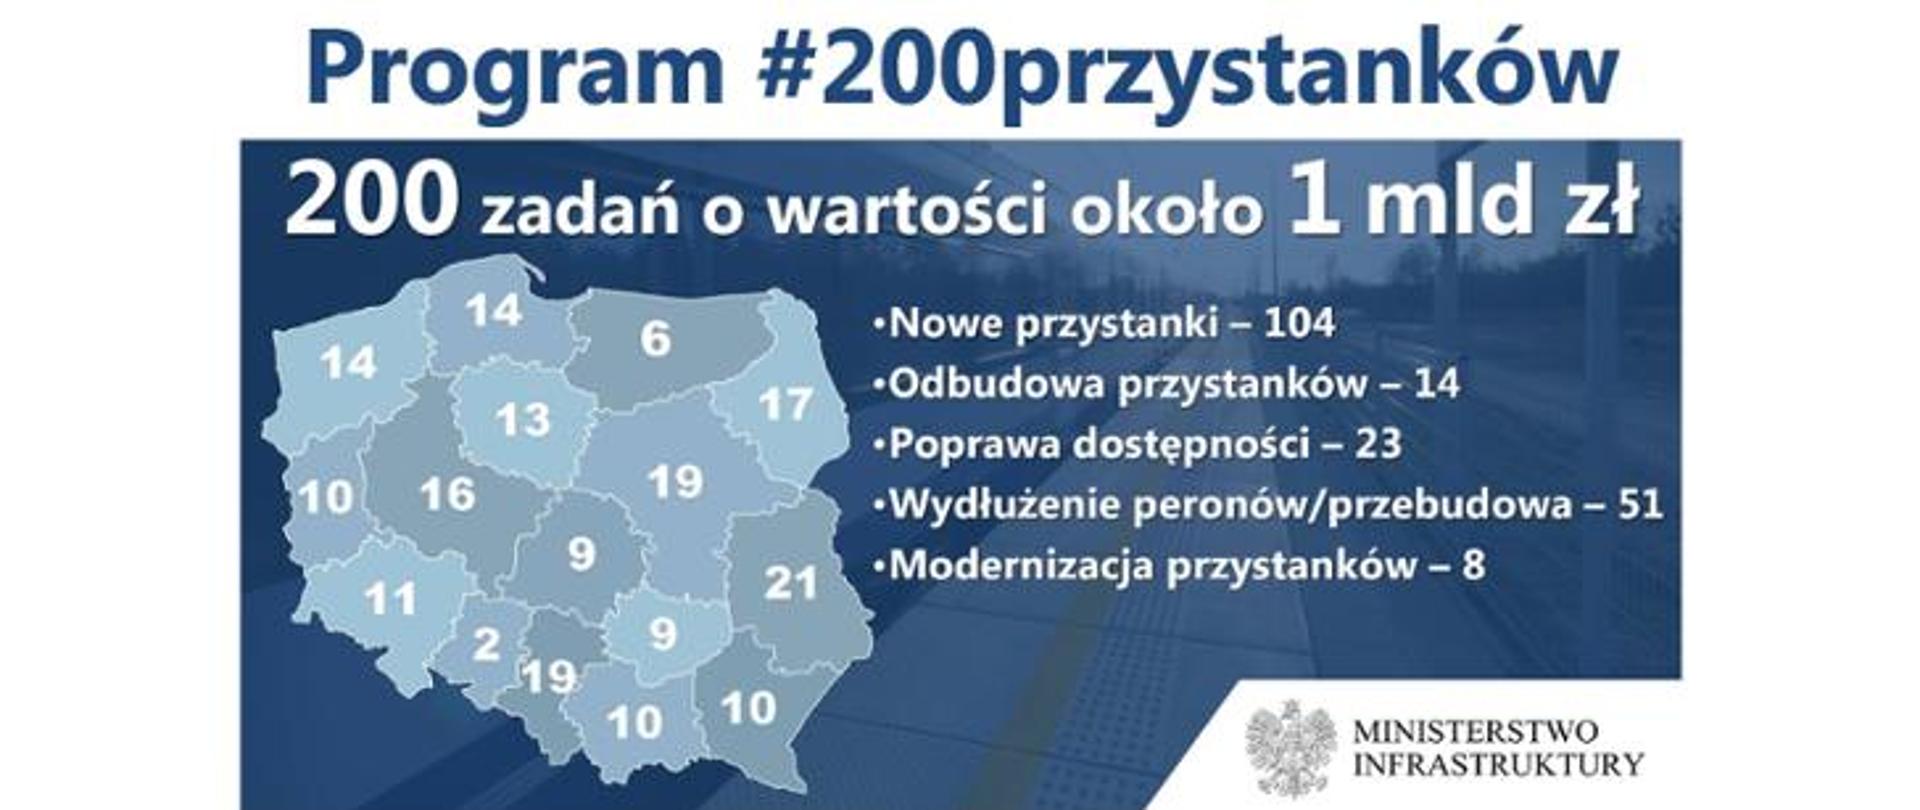 Prezydent Andrzej Duda i minister Andrzej Adamczyk zapowiedzieli budowę 200 przystanków kolejowych